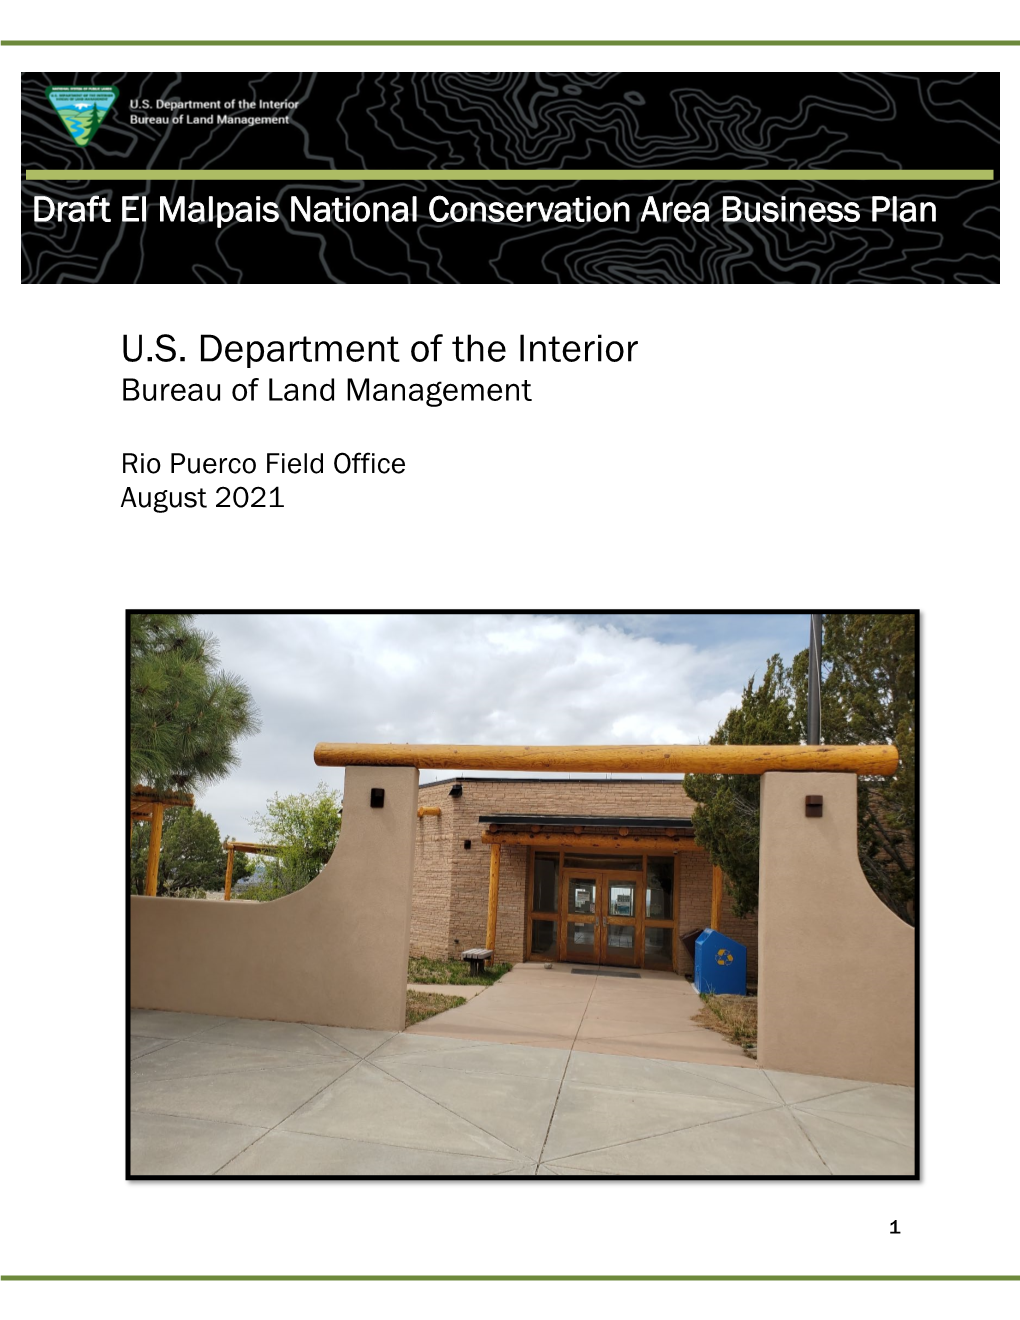 2021 El Malpais National Conservation Area Business Plan 508 Compliant